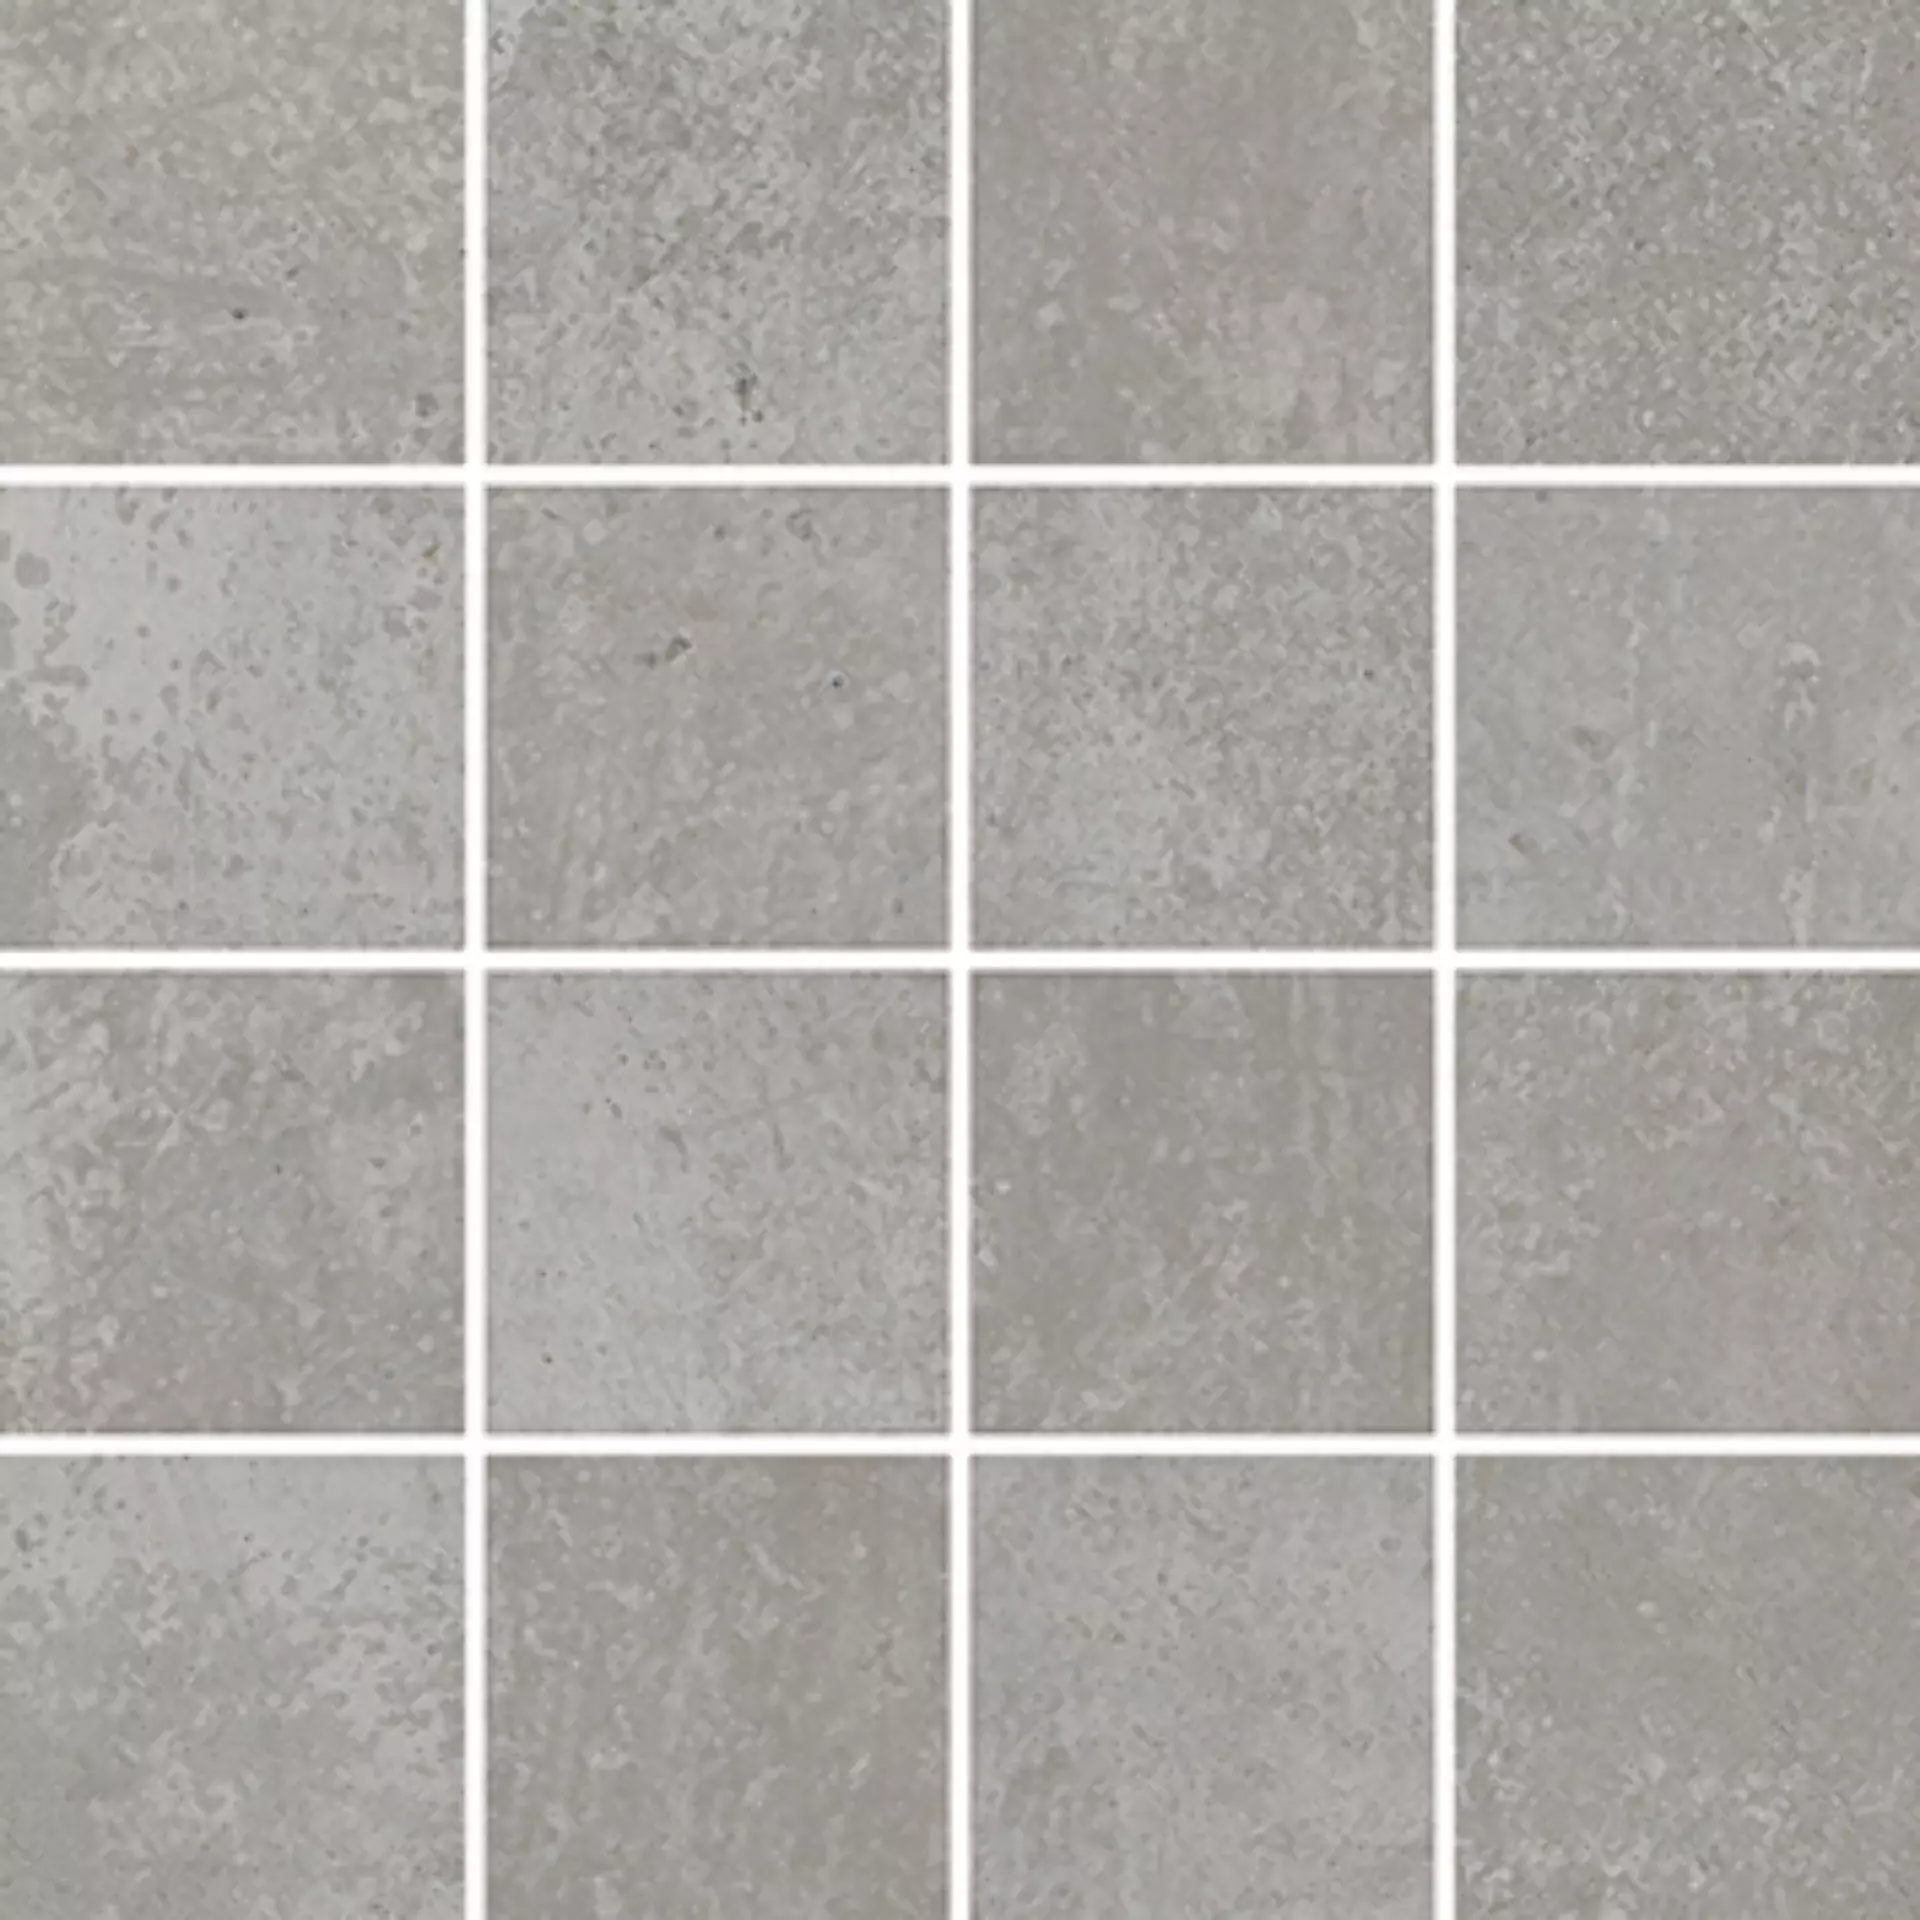 Wandfliese,Bodenfliese Villeroy & Boch Atlanta Concrete Grey Matt Concrete Grey 2013-AL60 matt 7,5x7,5cm Mosaik (7,5x7,5) rektifiziert 10mm